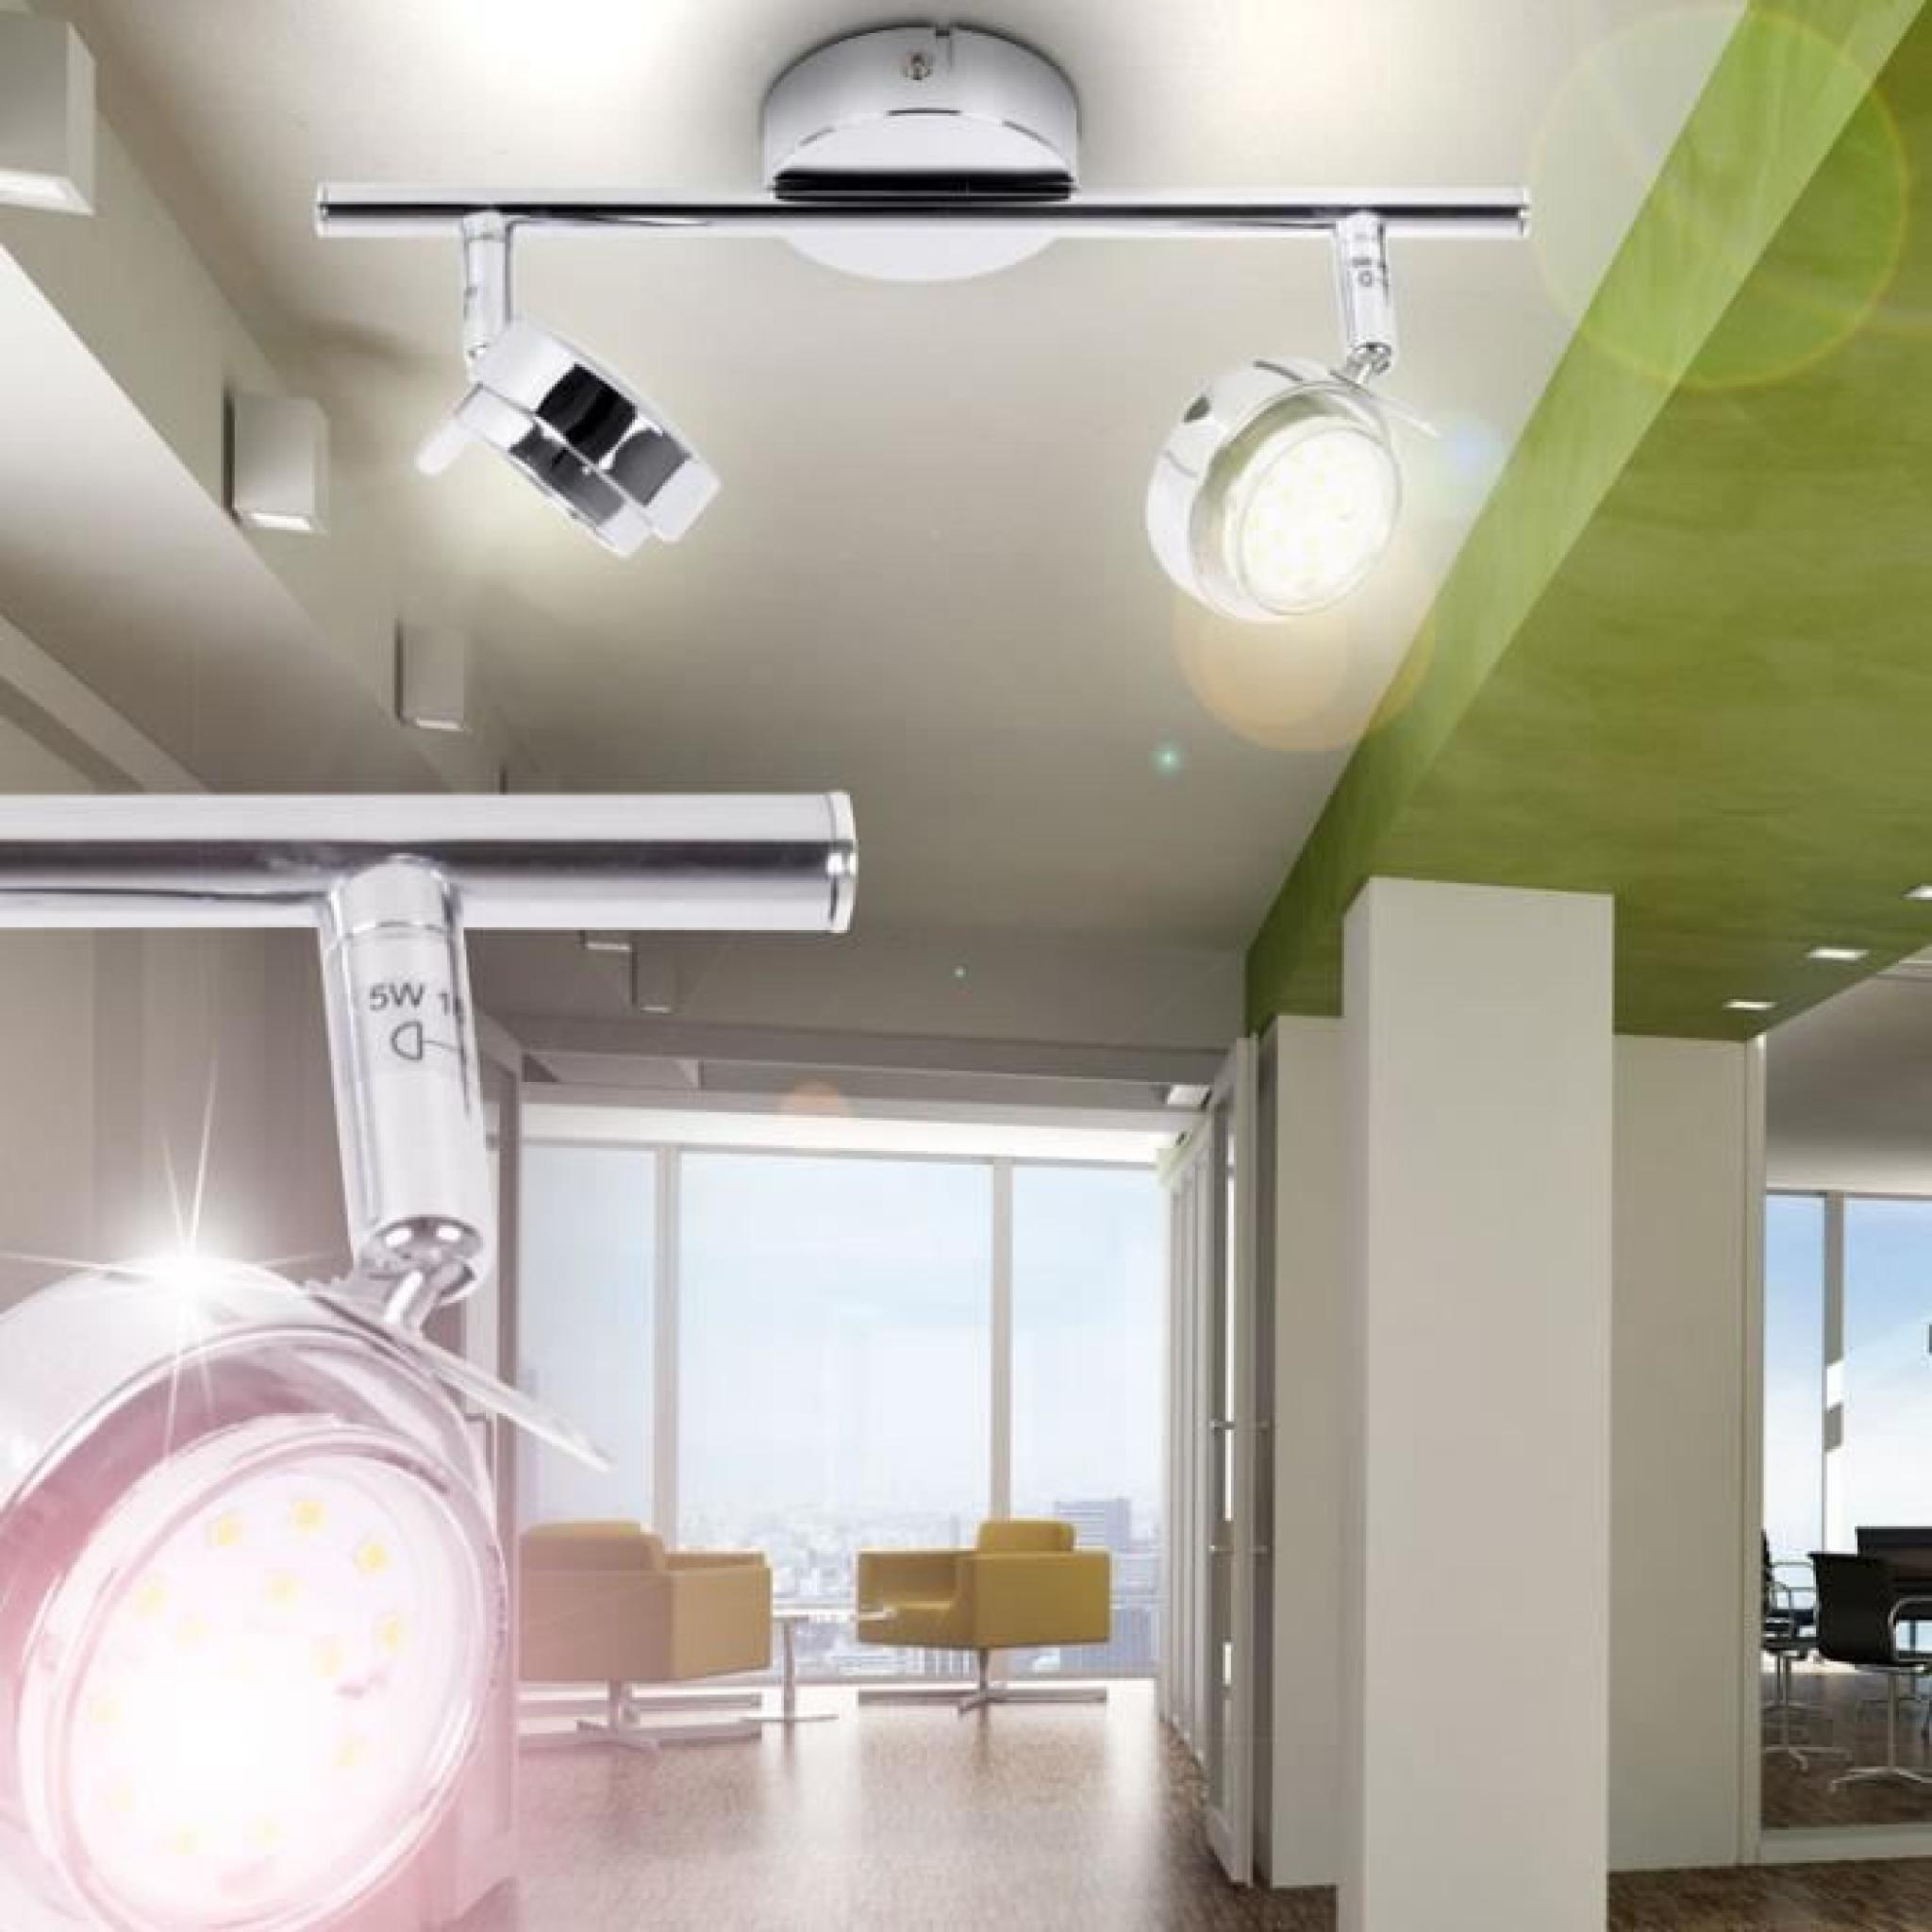 Plafonnier DEL 10 watts luminaire mural plafond applique lampe 2 spots chrome éclairage pas cher